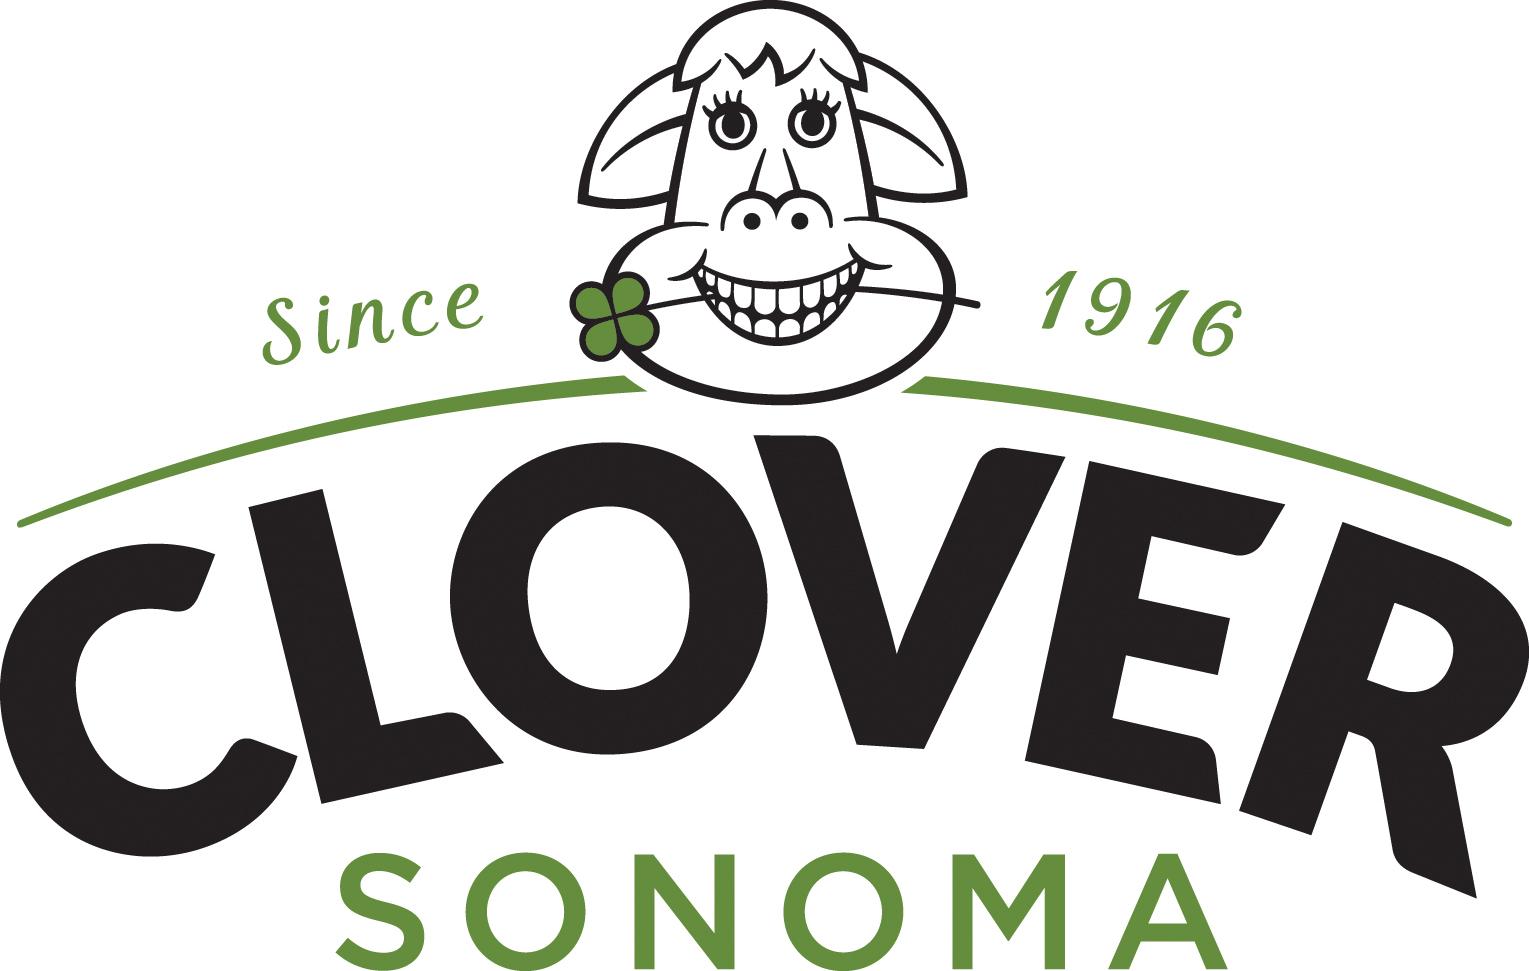 Sonoma Logo - Clover Sonoma Logo